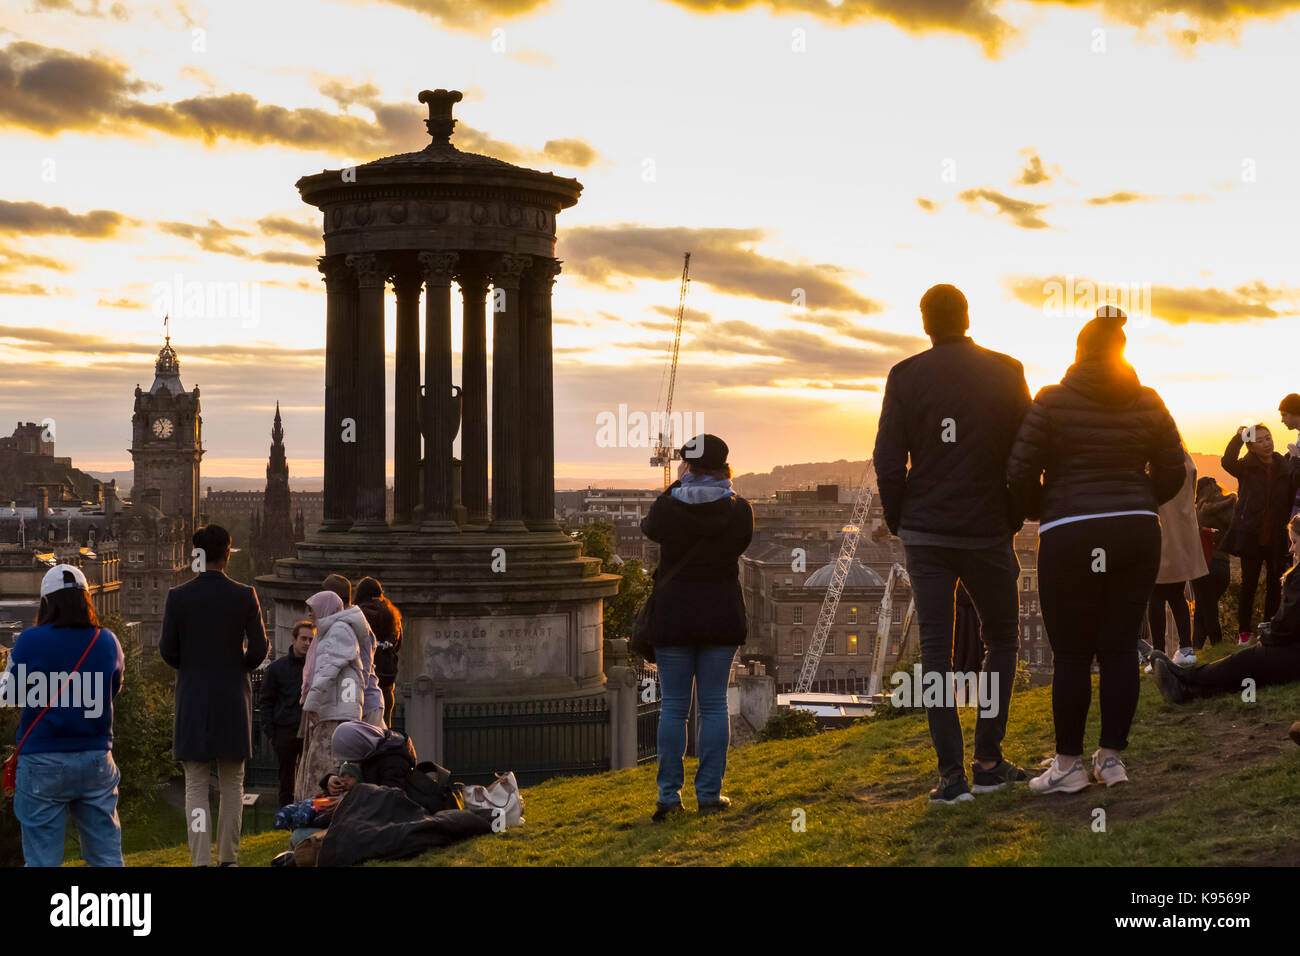 Les touristes se regroupent sur Calton Hill pour admirer le coucher de soleil sur Édimbourg, Écosse, Royaume-Uni. Banque D'Images